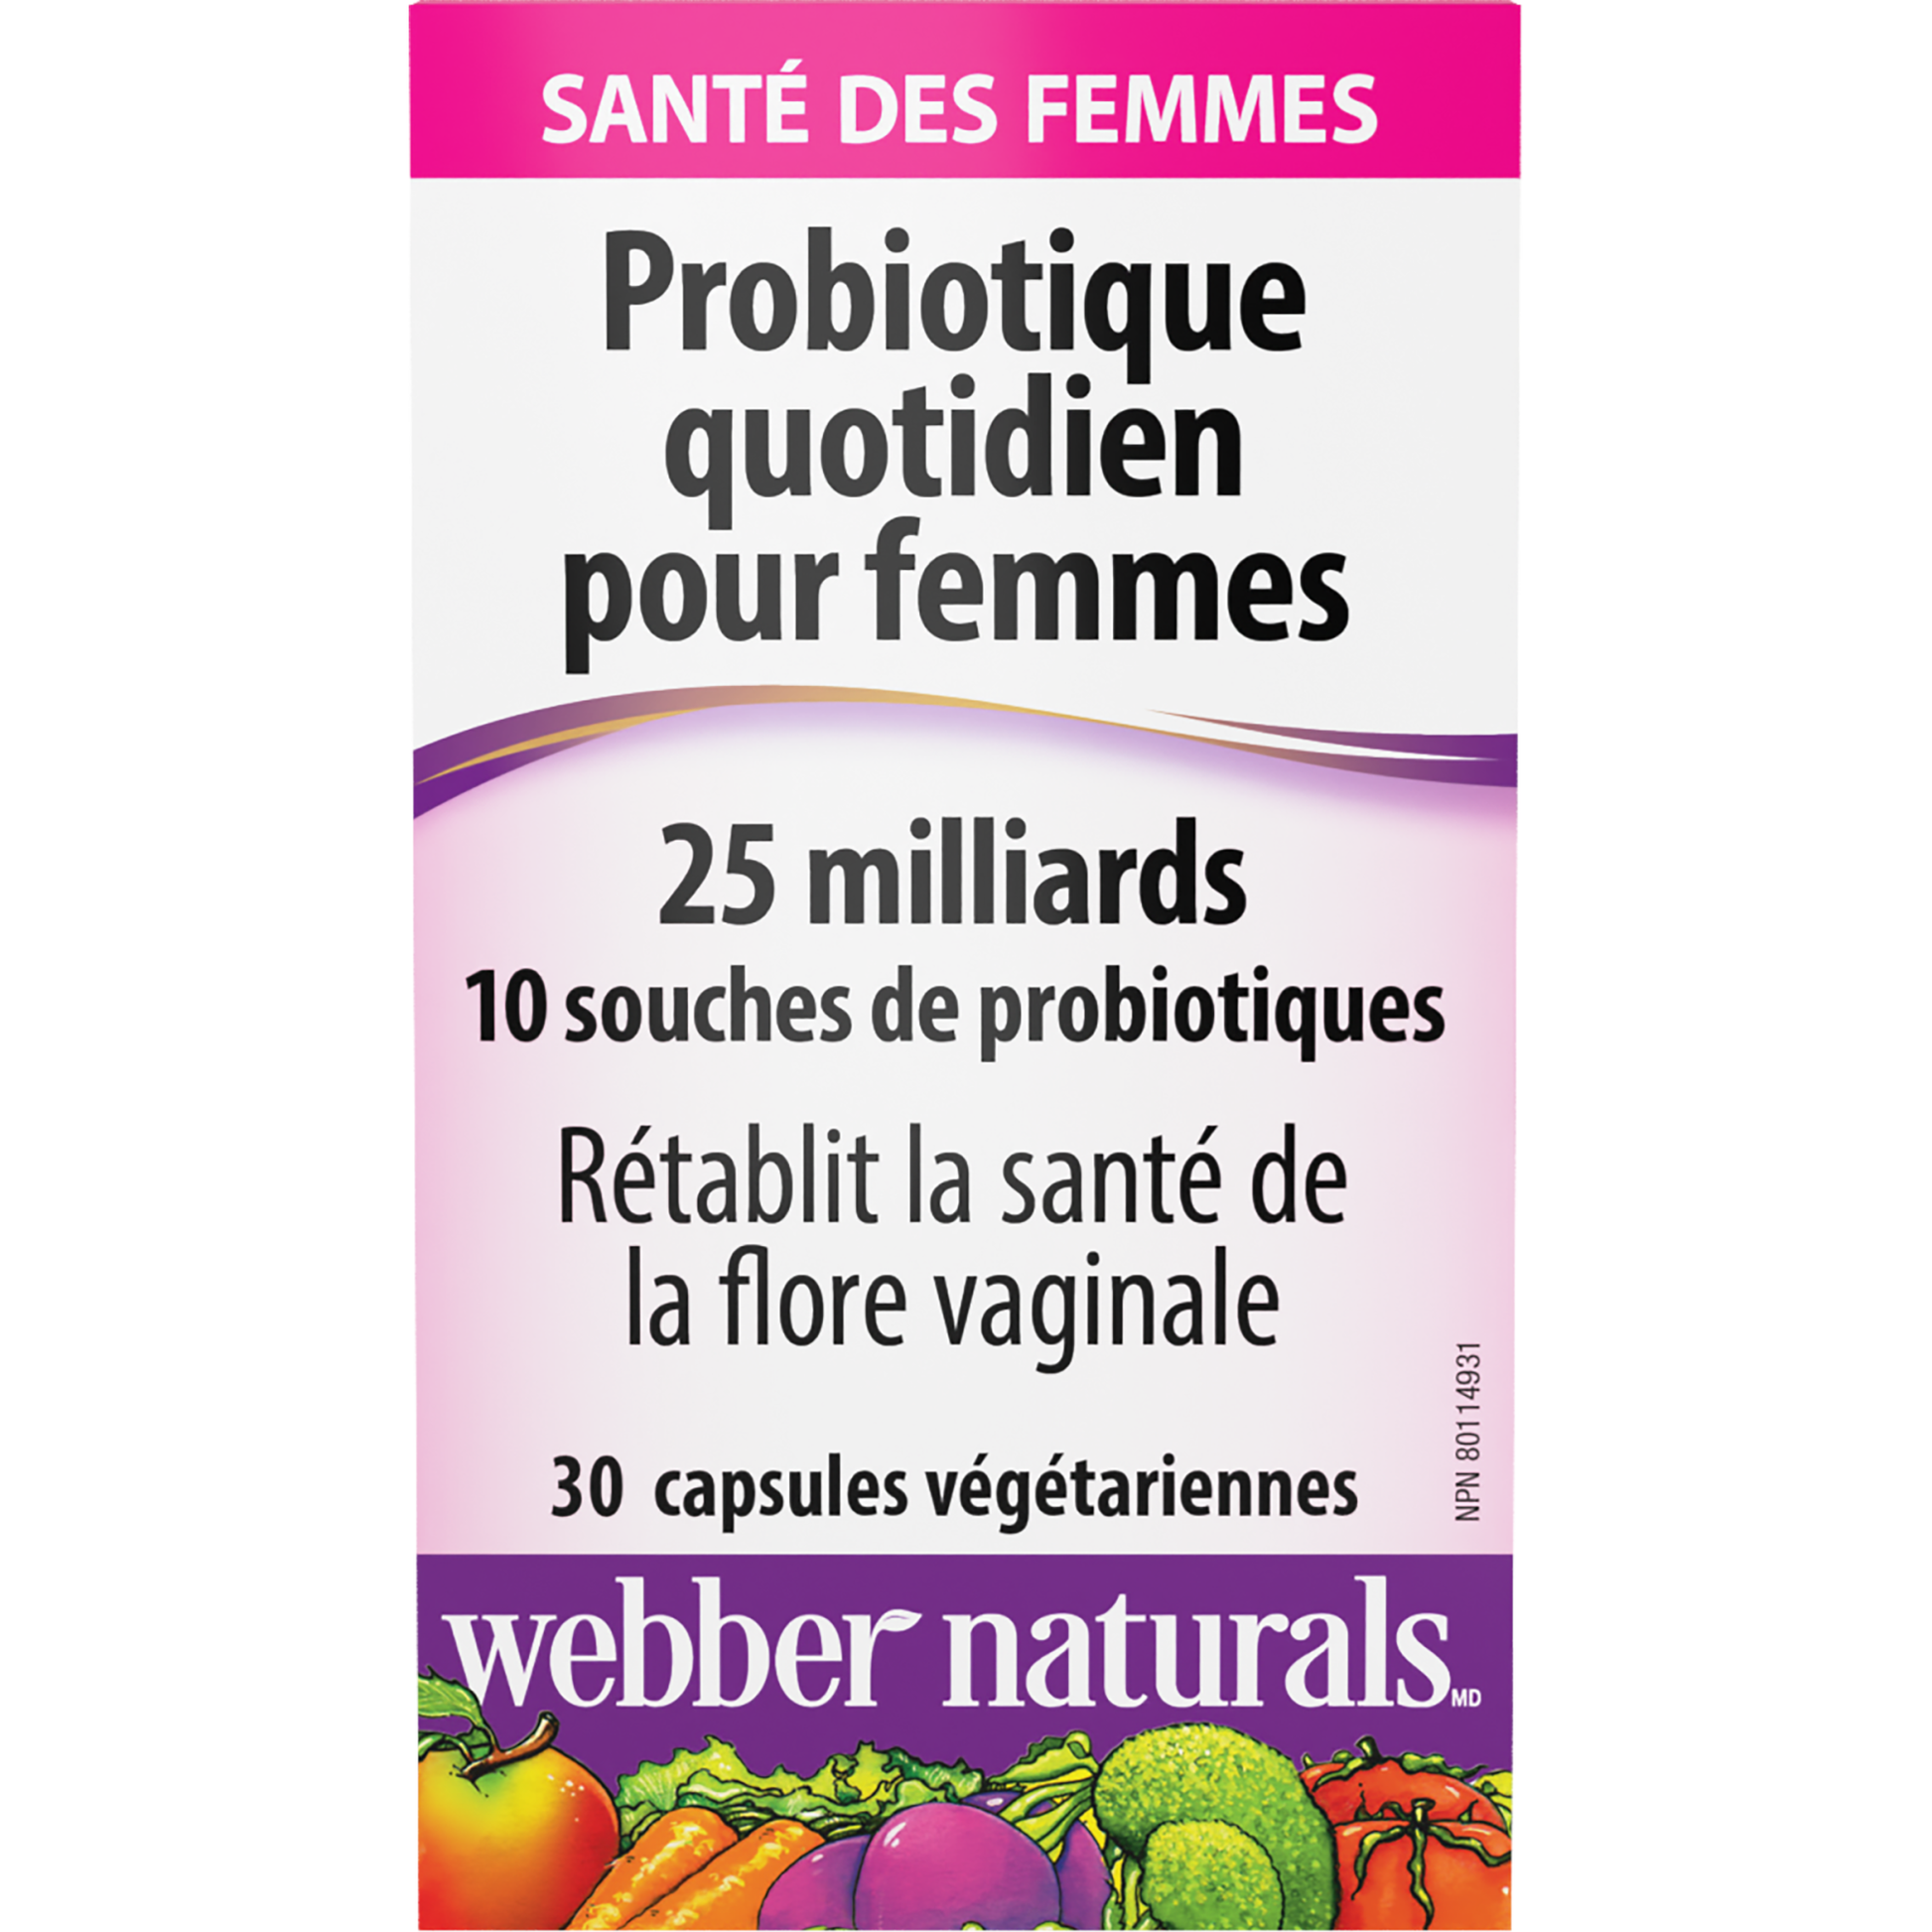 Probiotique quotidien pour femmes 25 milliards for Webber Naturals|v|hi-res|WN3901